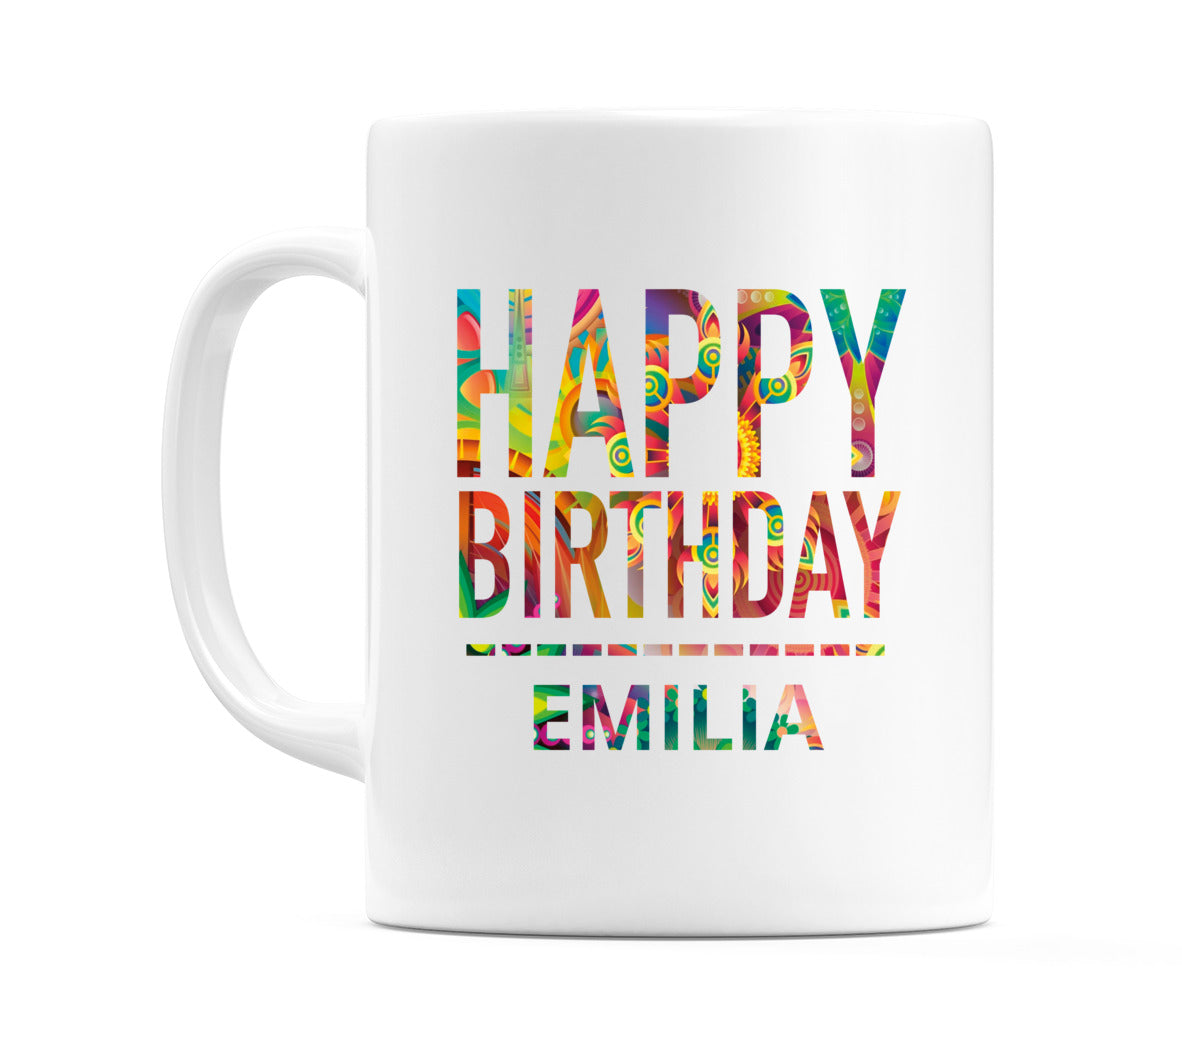 Happy Birthday Emilia (Tie Dye Effect) Mug Cup by WeDoMugs